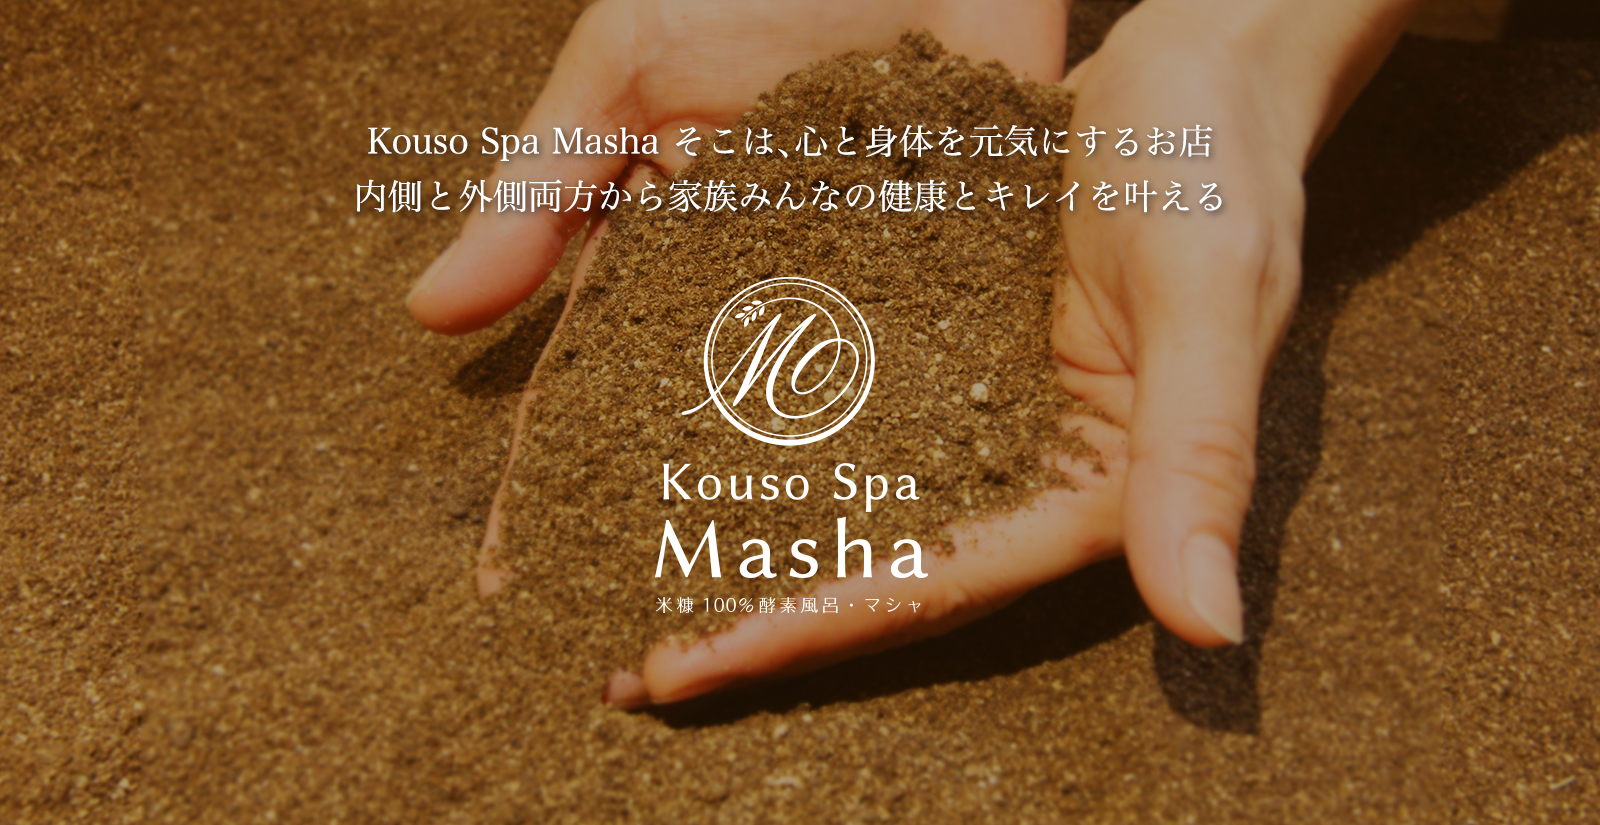 【KousoSpaMasha】米ぬか100%酵素風呂&エステ&酵素料理喫茶店